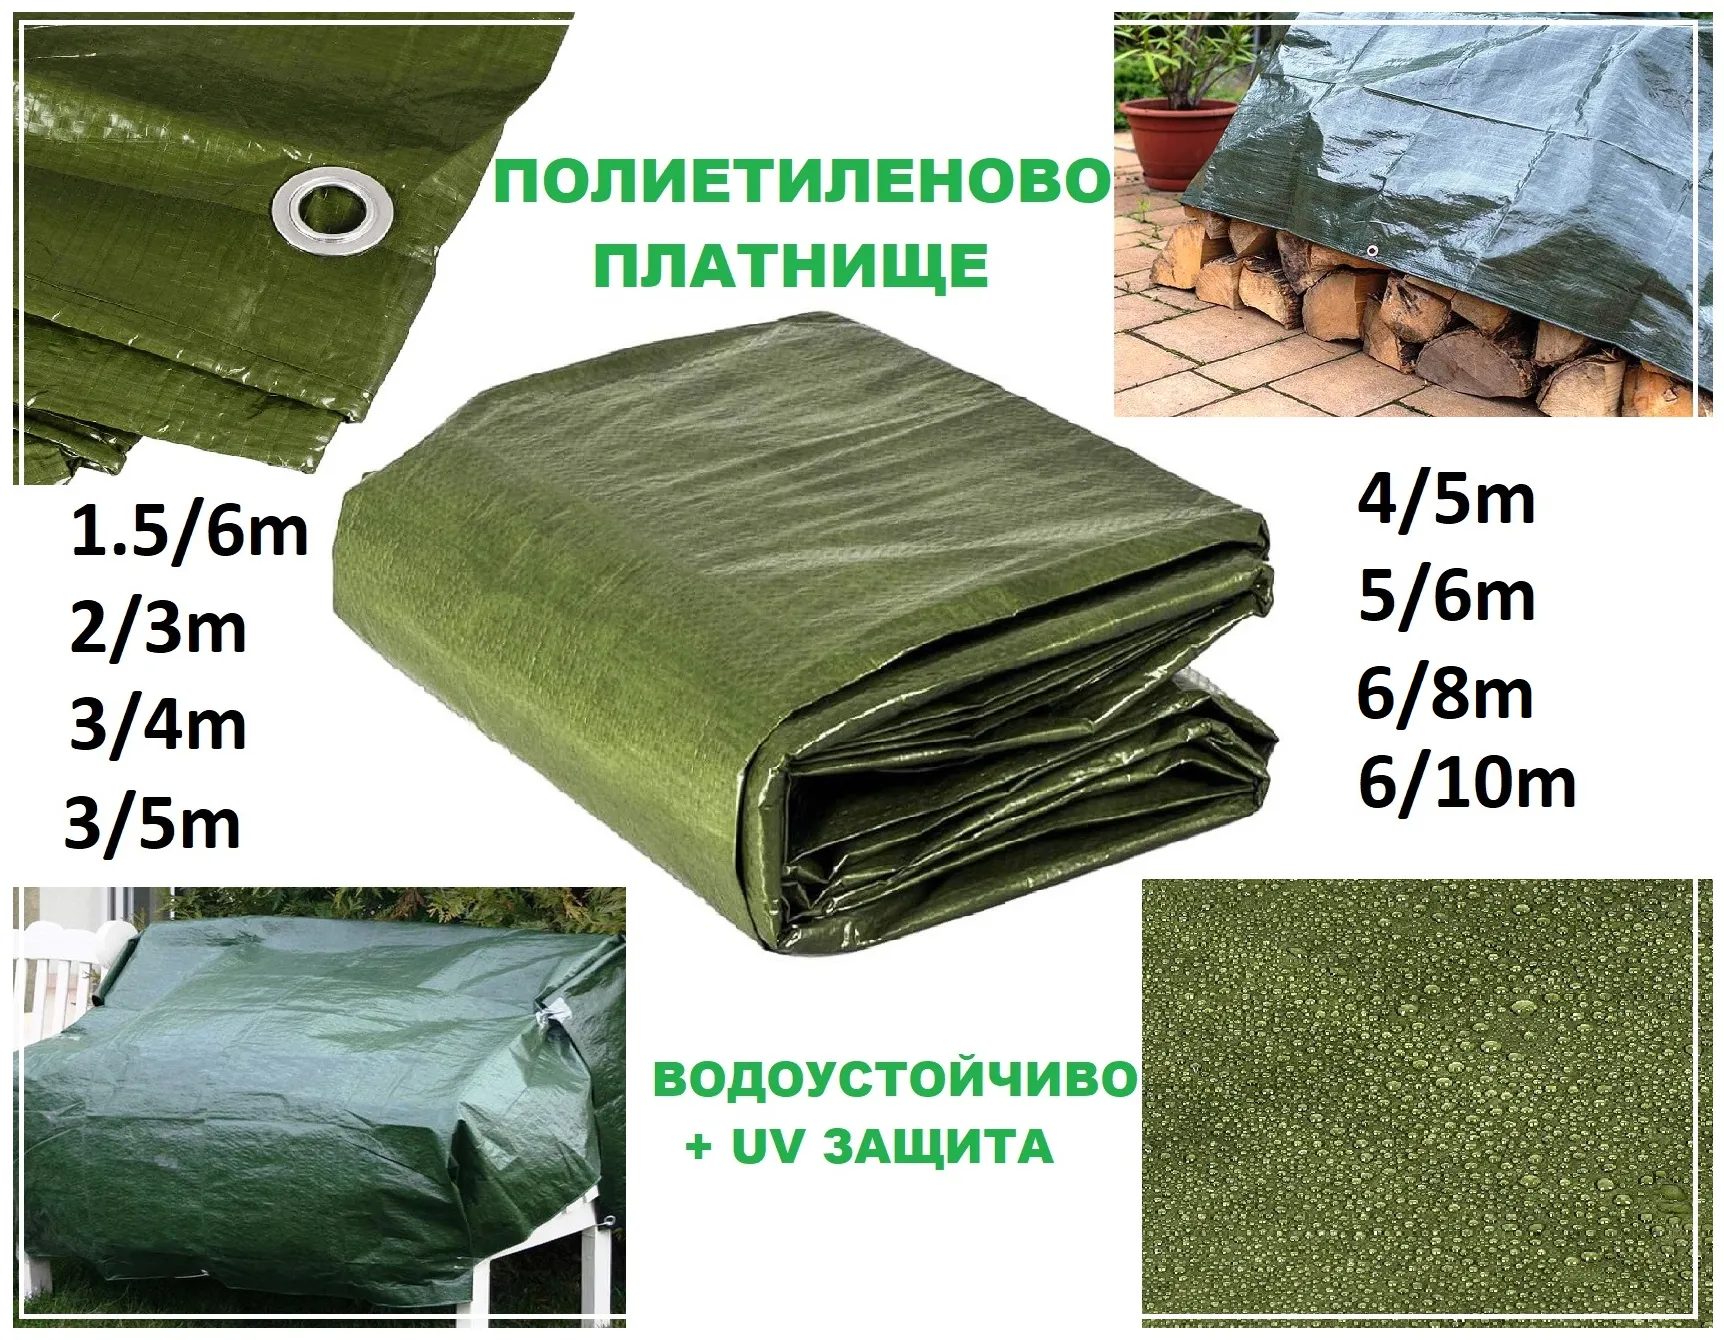 Полиетиленово платнище с UV защита, различни размери, с халки | Iguana.bg 34